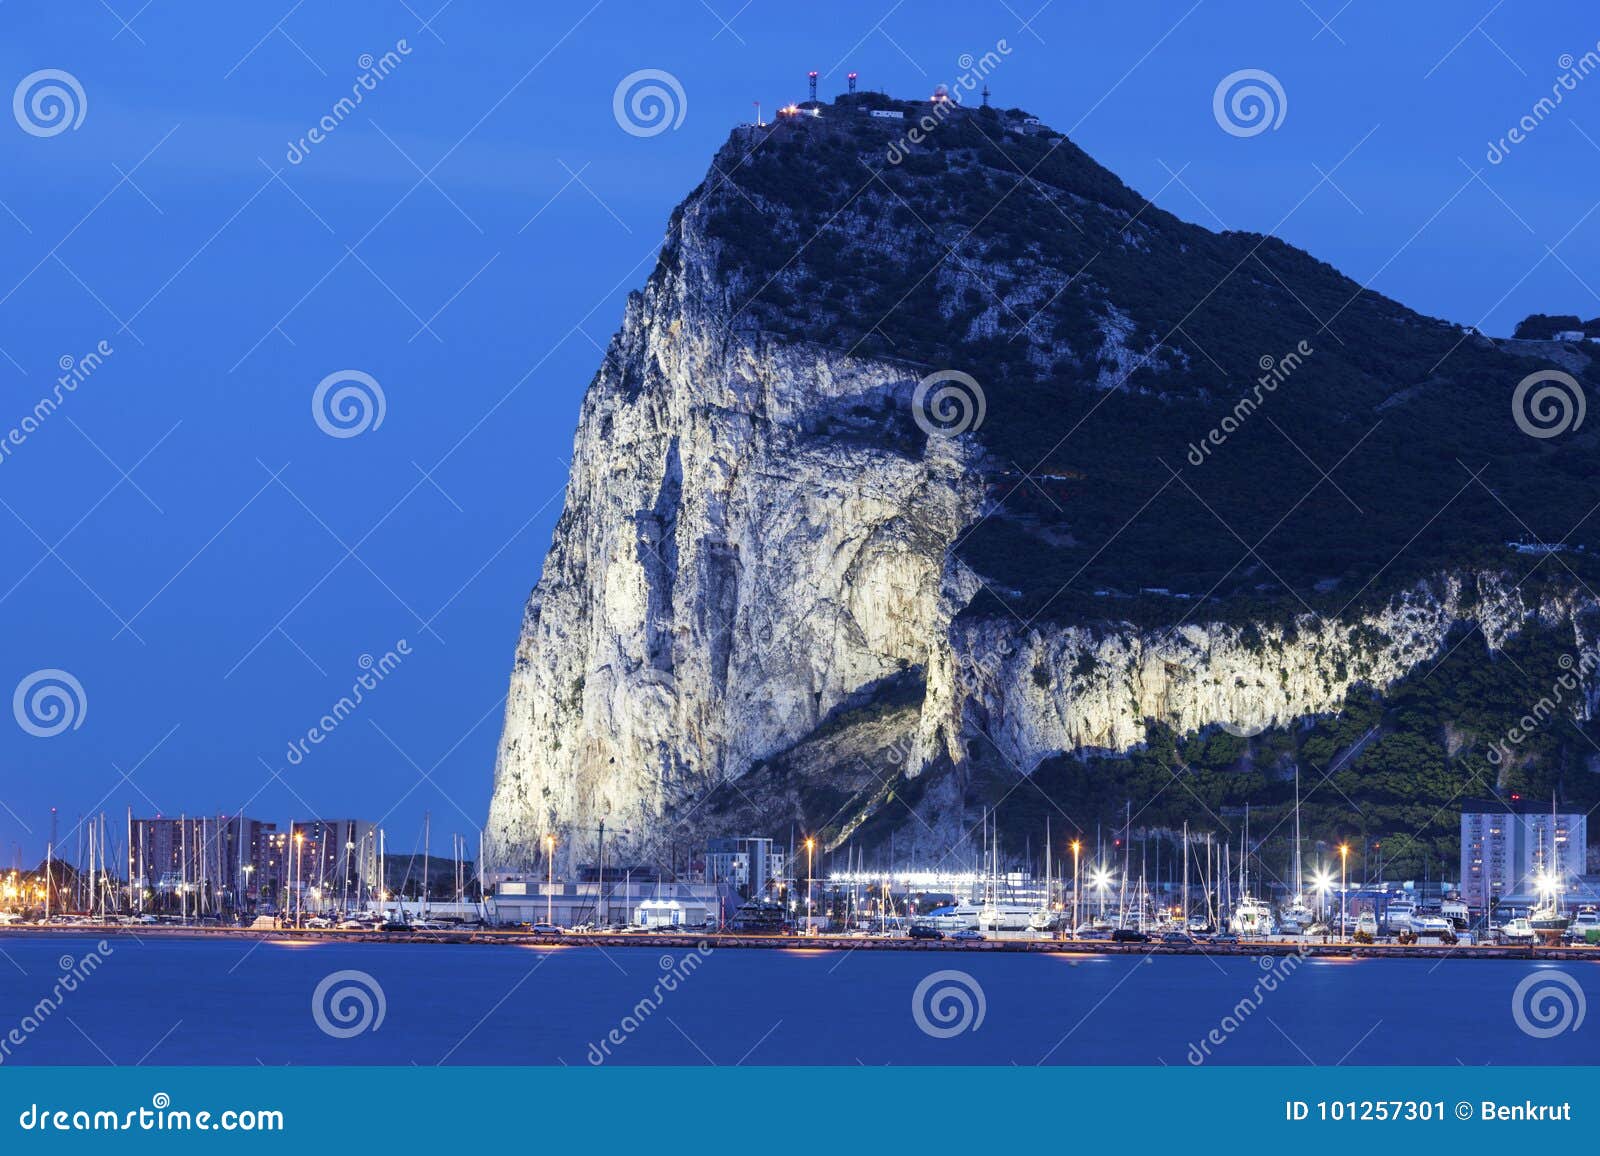 panorama of gibraltar seen from la linea de la concepcion